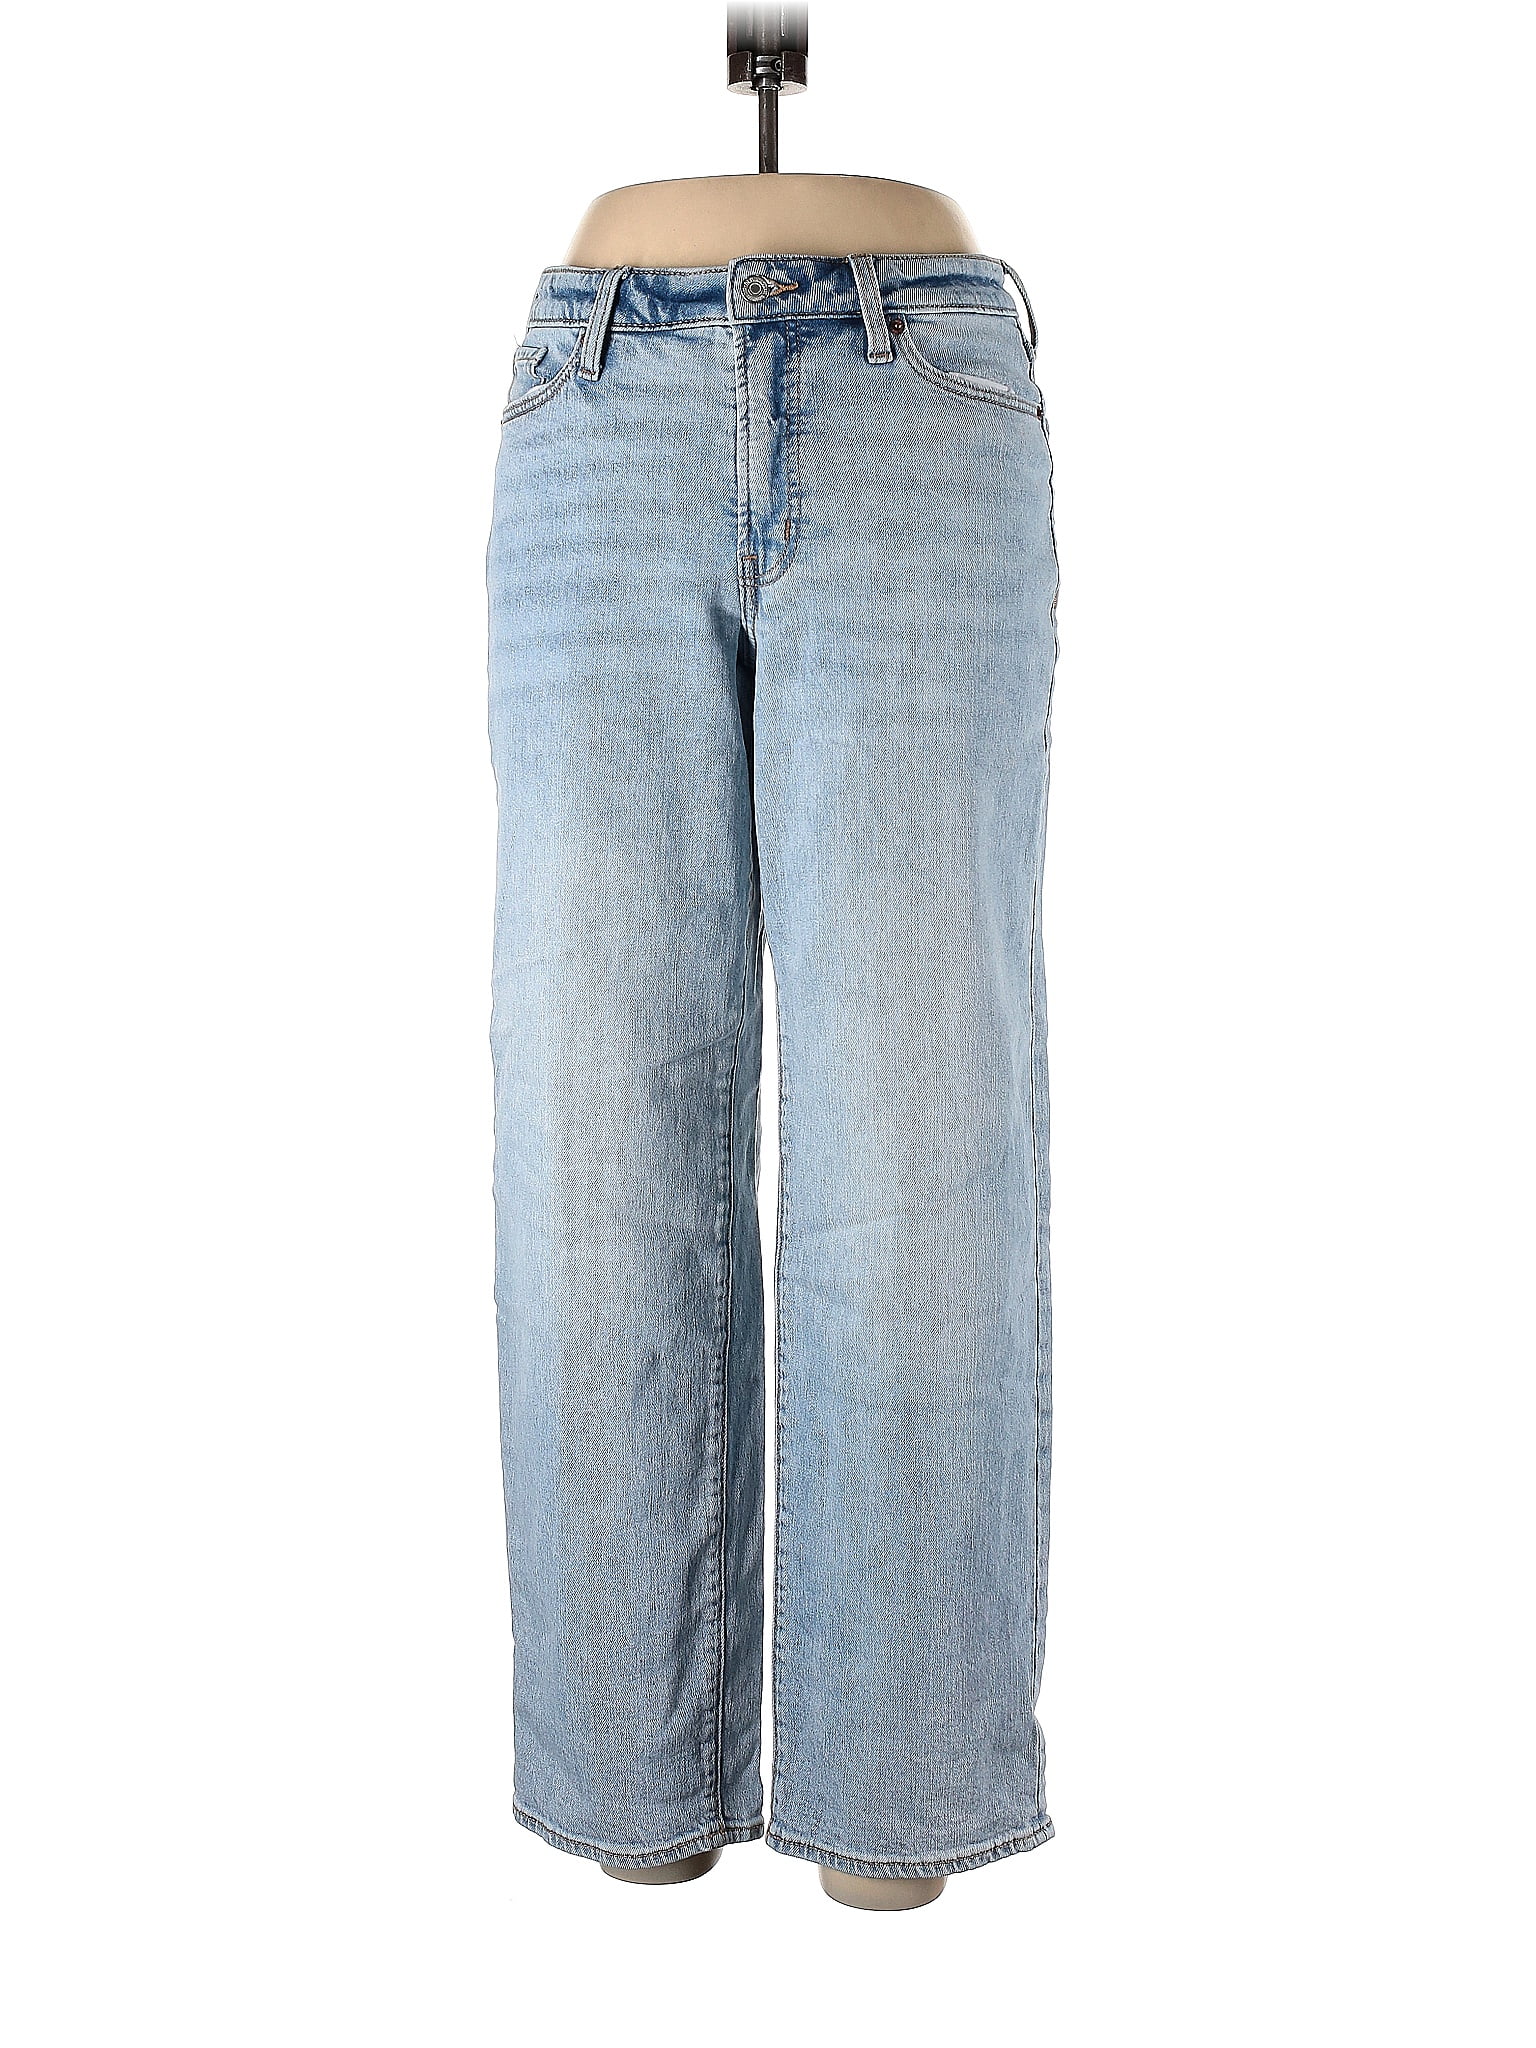 Old Navy Blue Jeans Size 10 - 44% off | thredUP